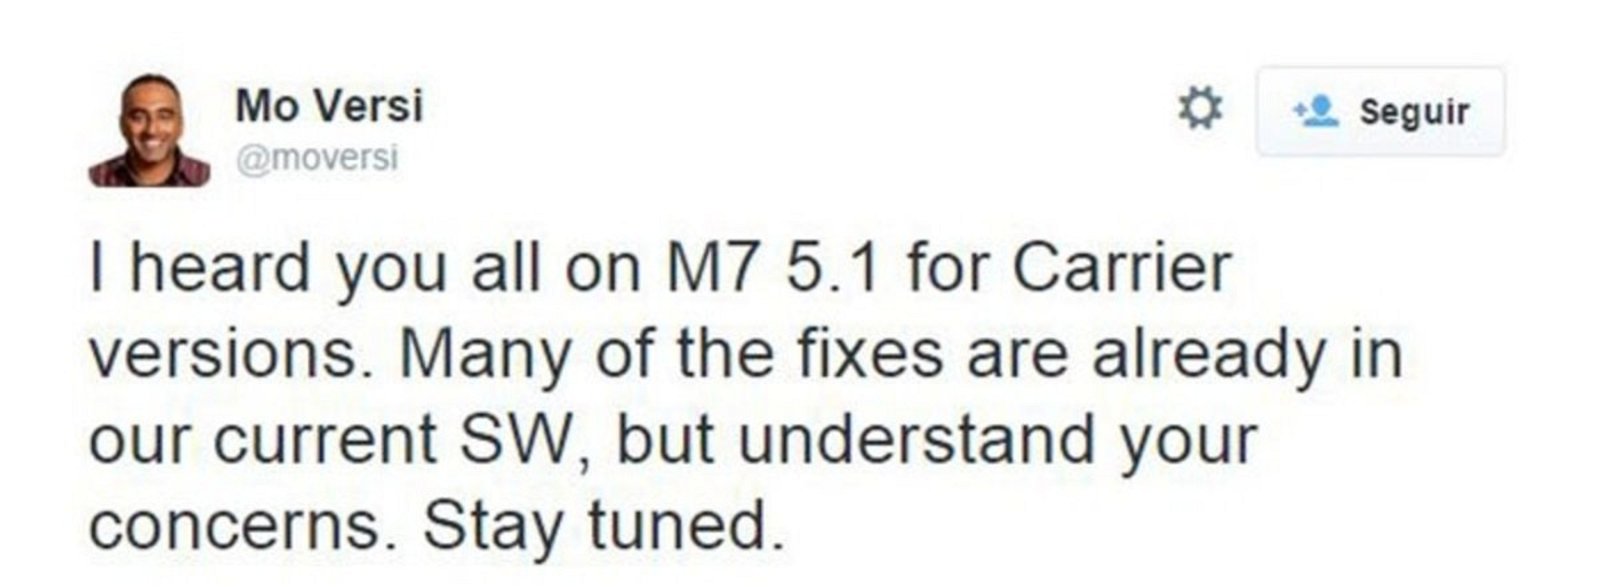 Mensaje de Mo Versi en Twitter acerca de la actualización a Android 5.1 Lollipop del HTC One M7 Sense